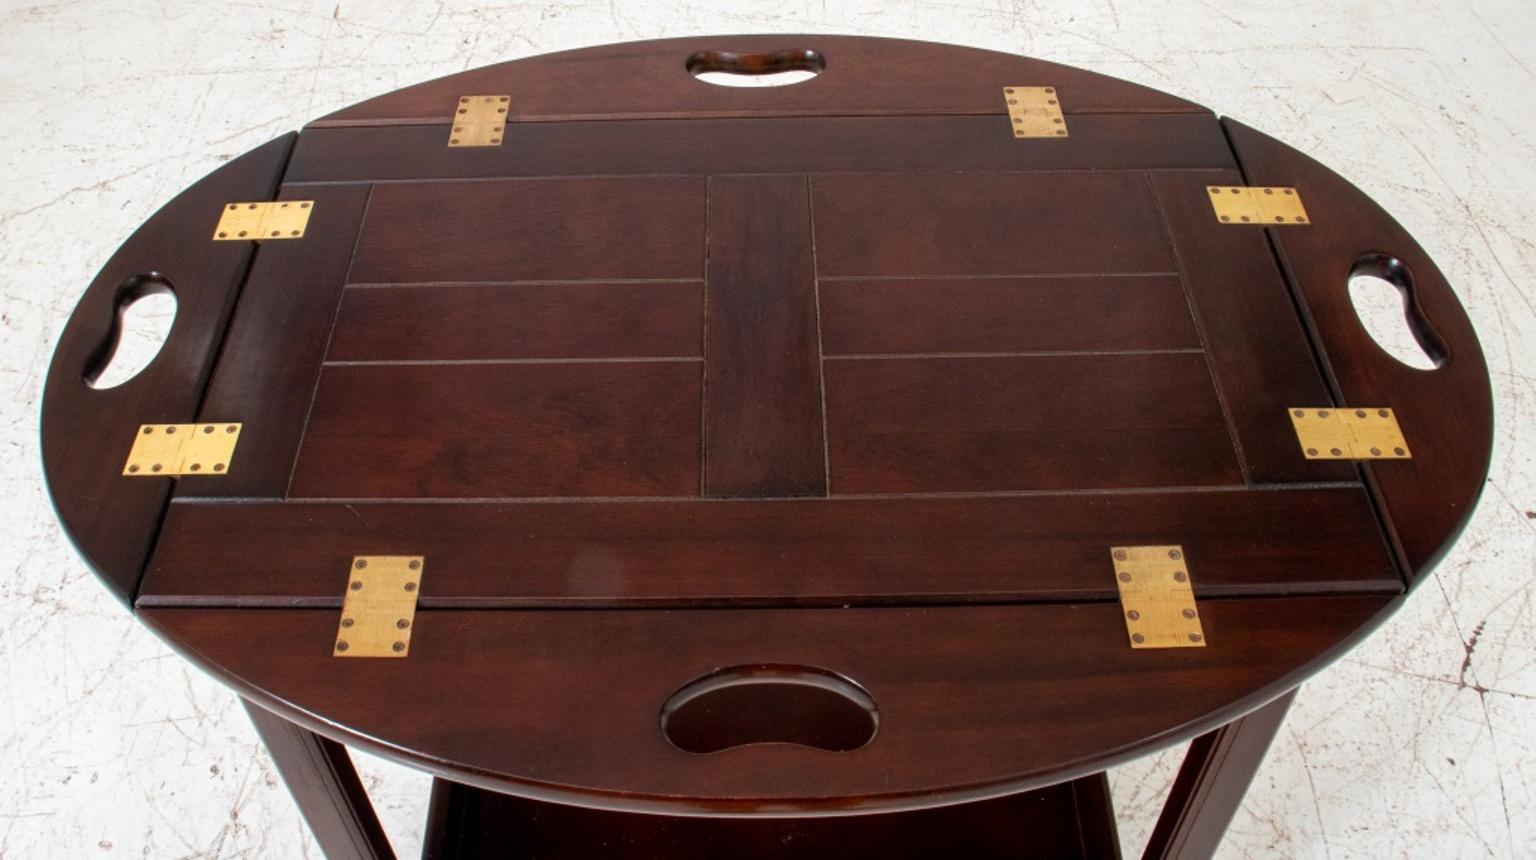 Moderner Butler-Tisch / Beistelltisch / Couchtisch, ovale bis quadratische Platte mit vier klappbaren Blättern, die mit Messingscharnieren montiert sind, eine untere Ablage.
Händler: S138XX.